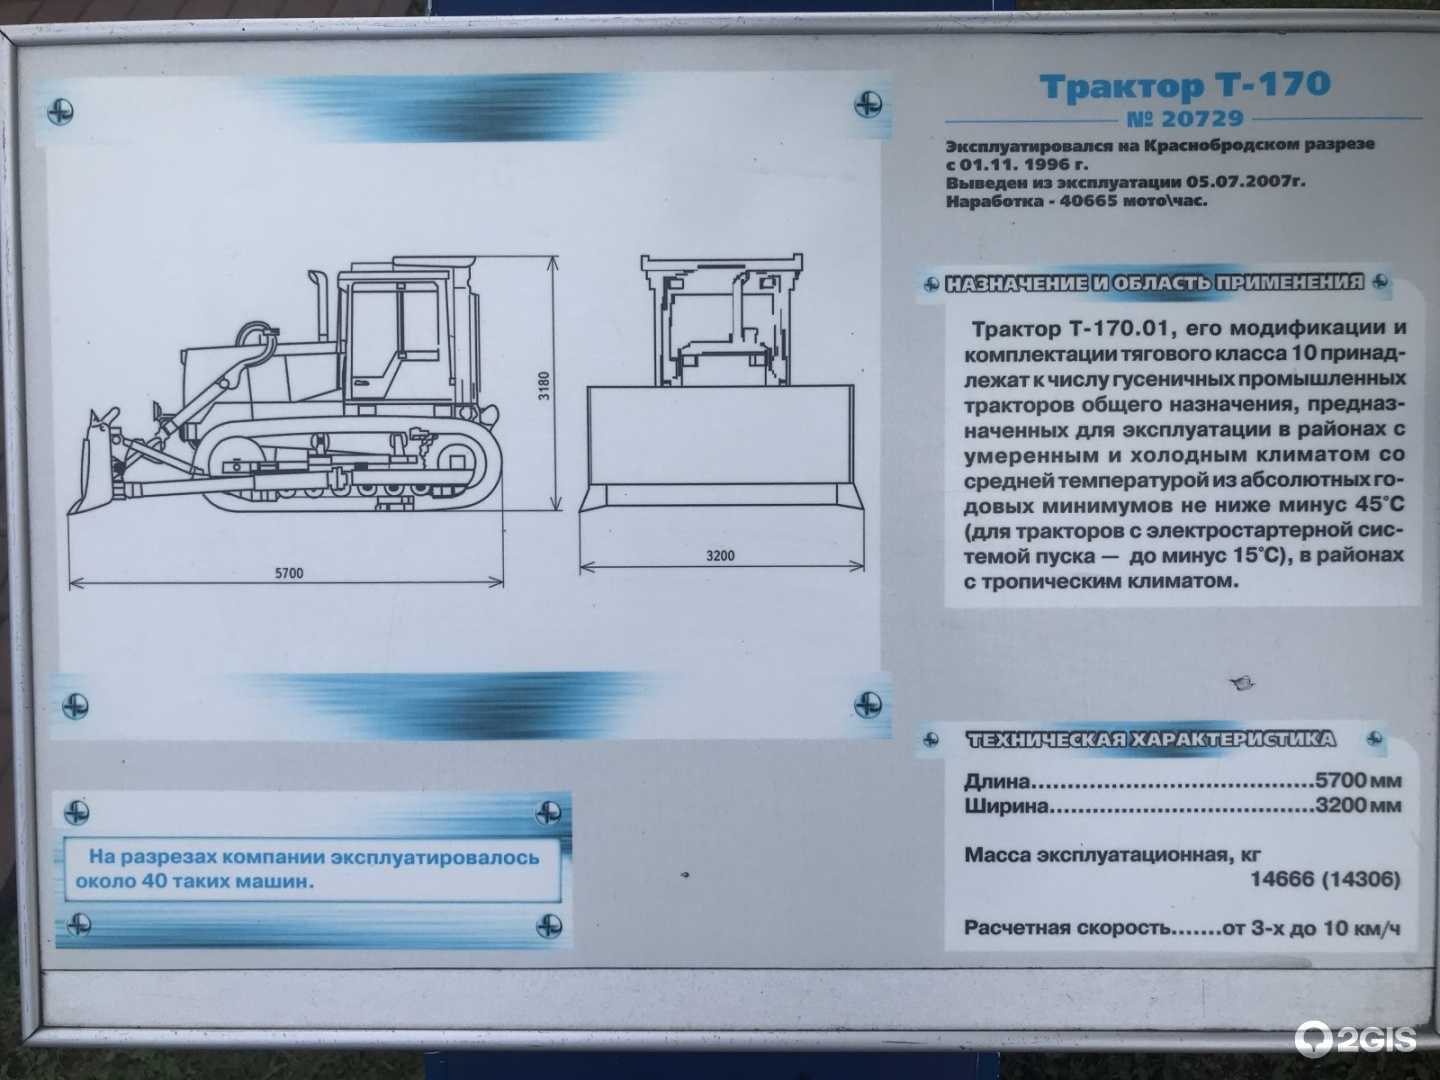 Инструкция по эксплуатации бульдозера т-170, технические характеристики